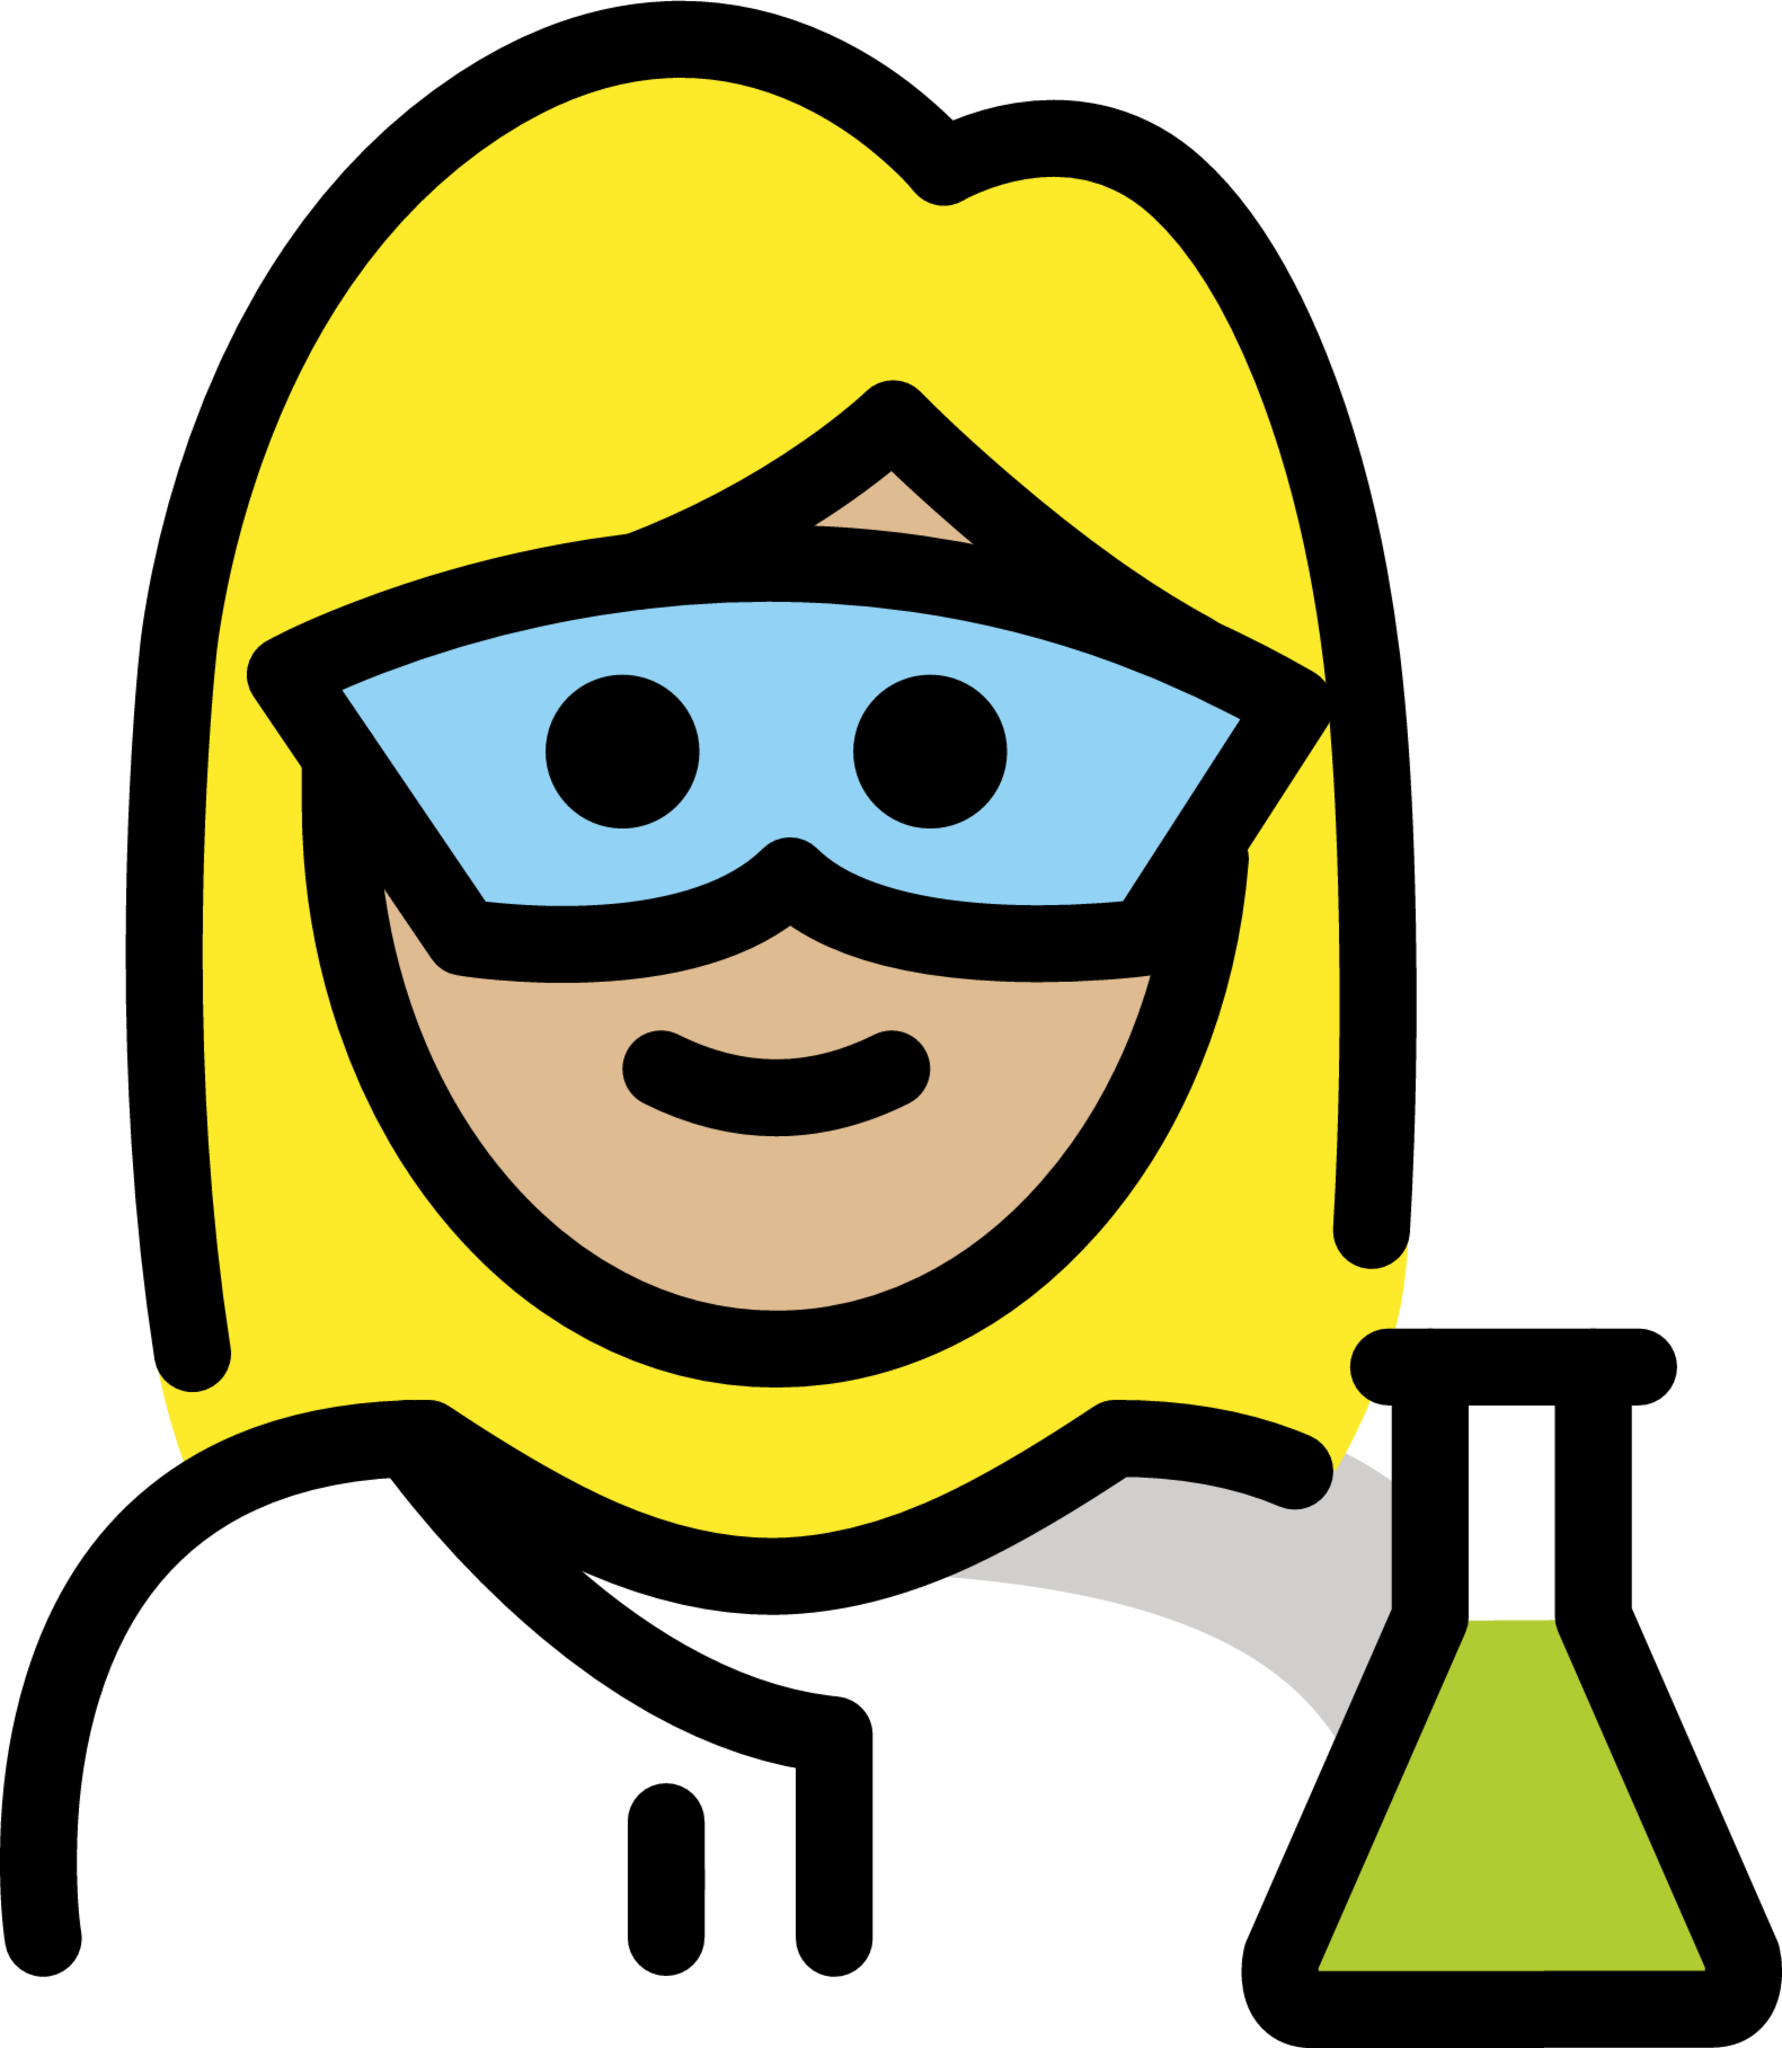 woman scientist: medium-light skin tone emoji